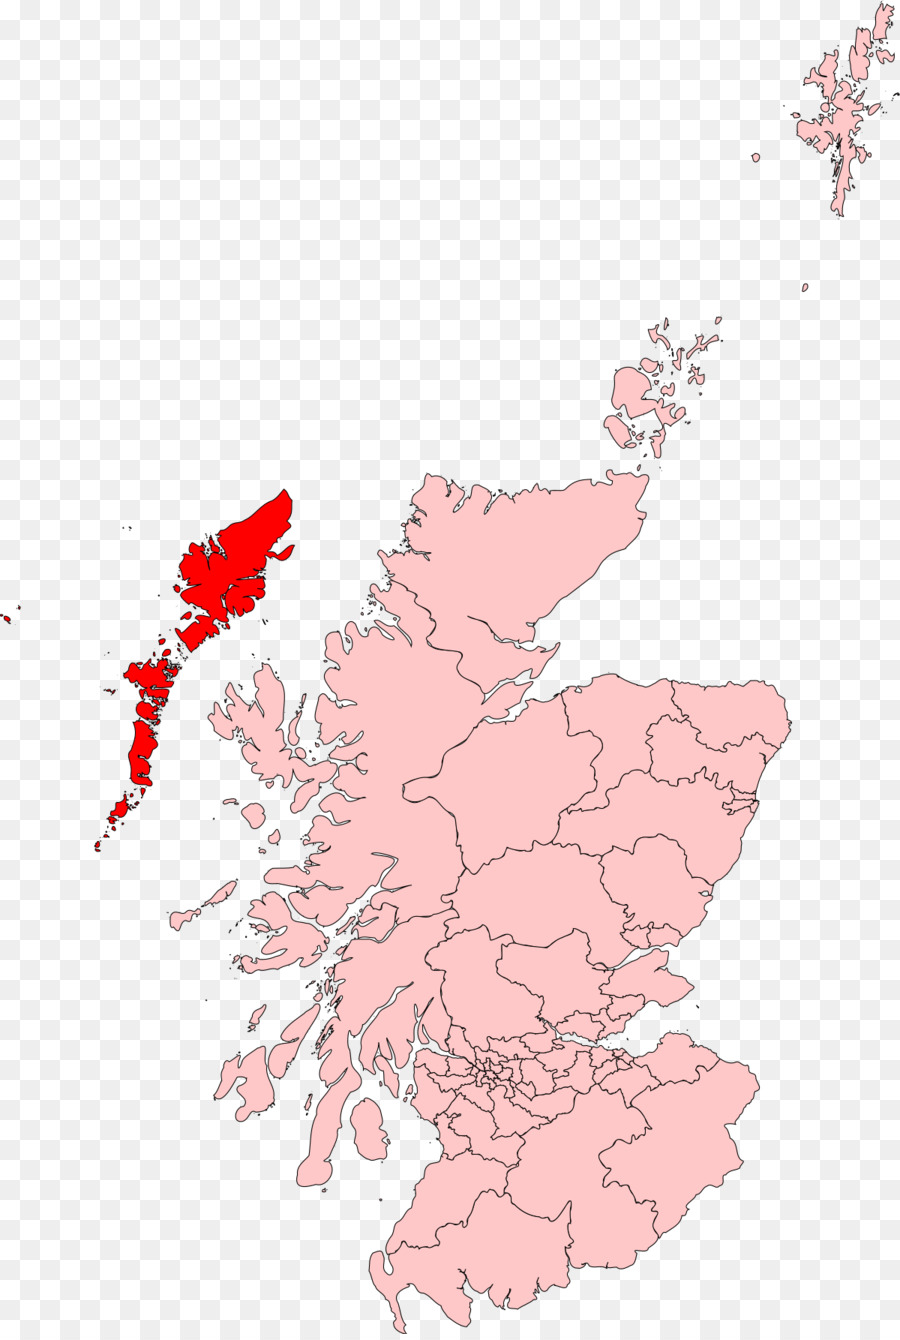 Scốt-len bầu cử Nghị viện 2016 Vương quốc Anh chung bầu cử, 2017 Scotland bầu cử Nghị viện 2011 - 